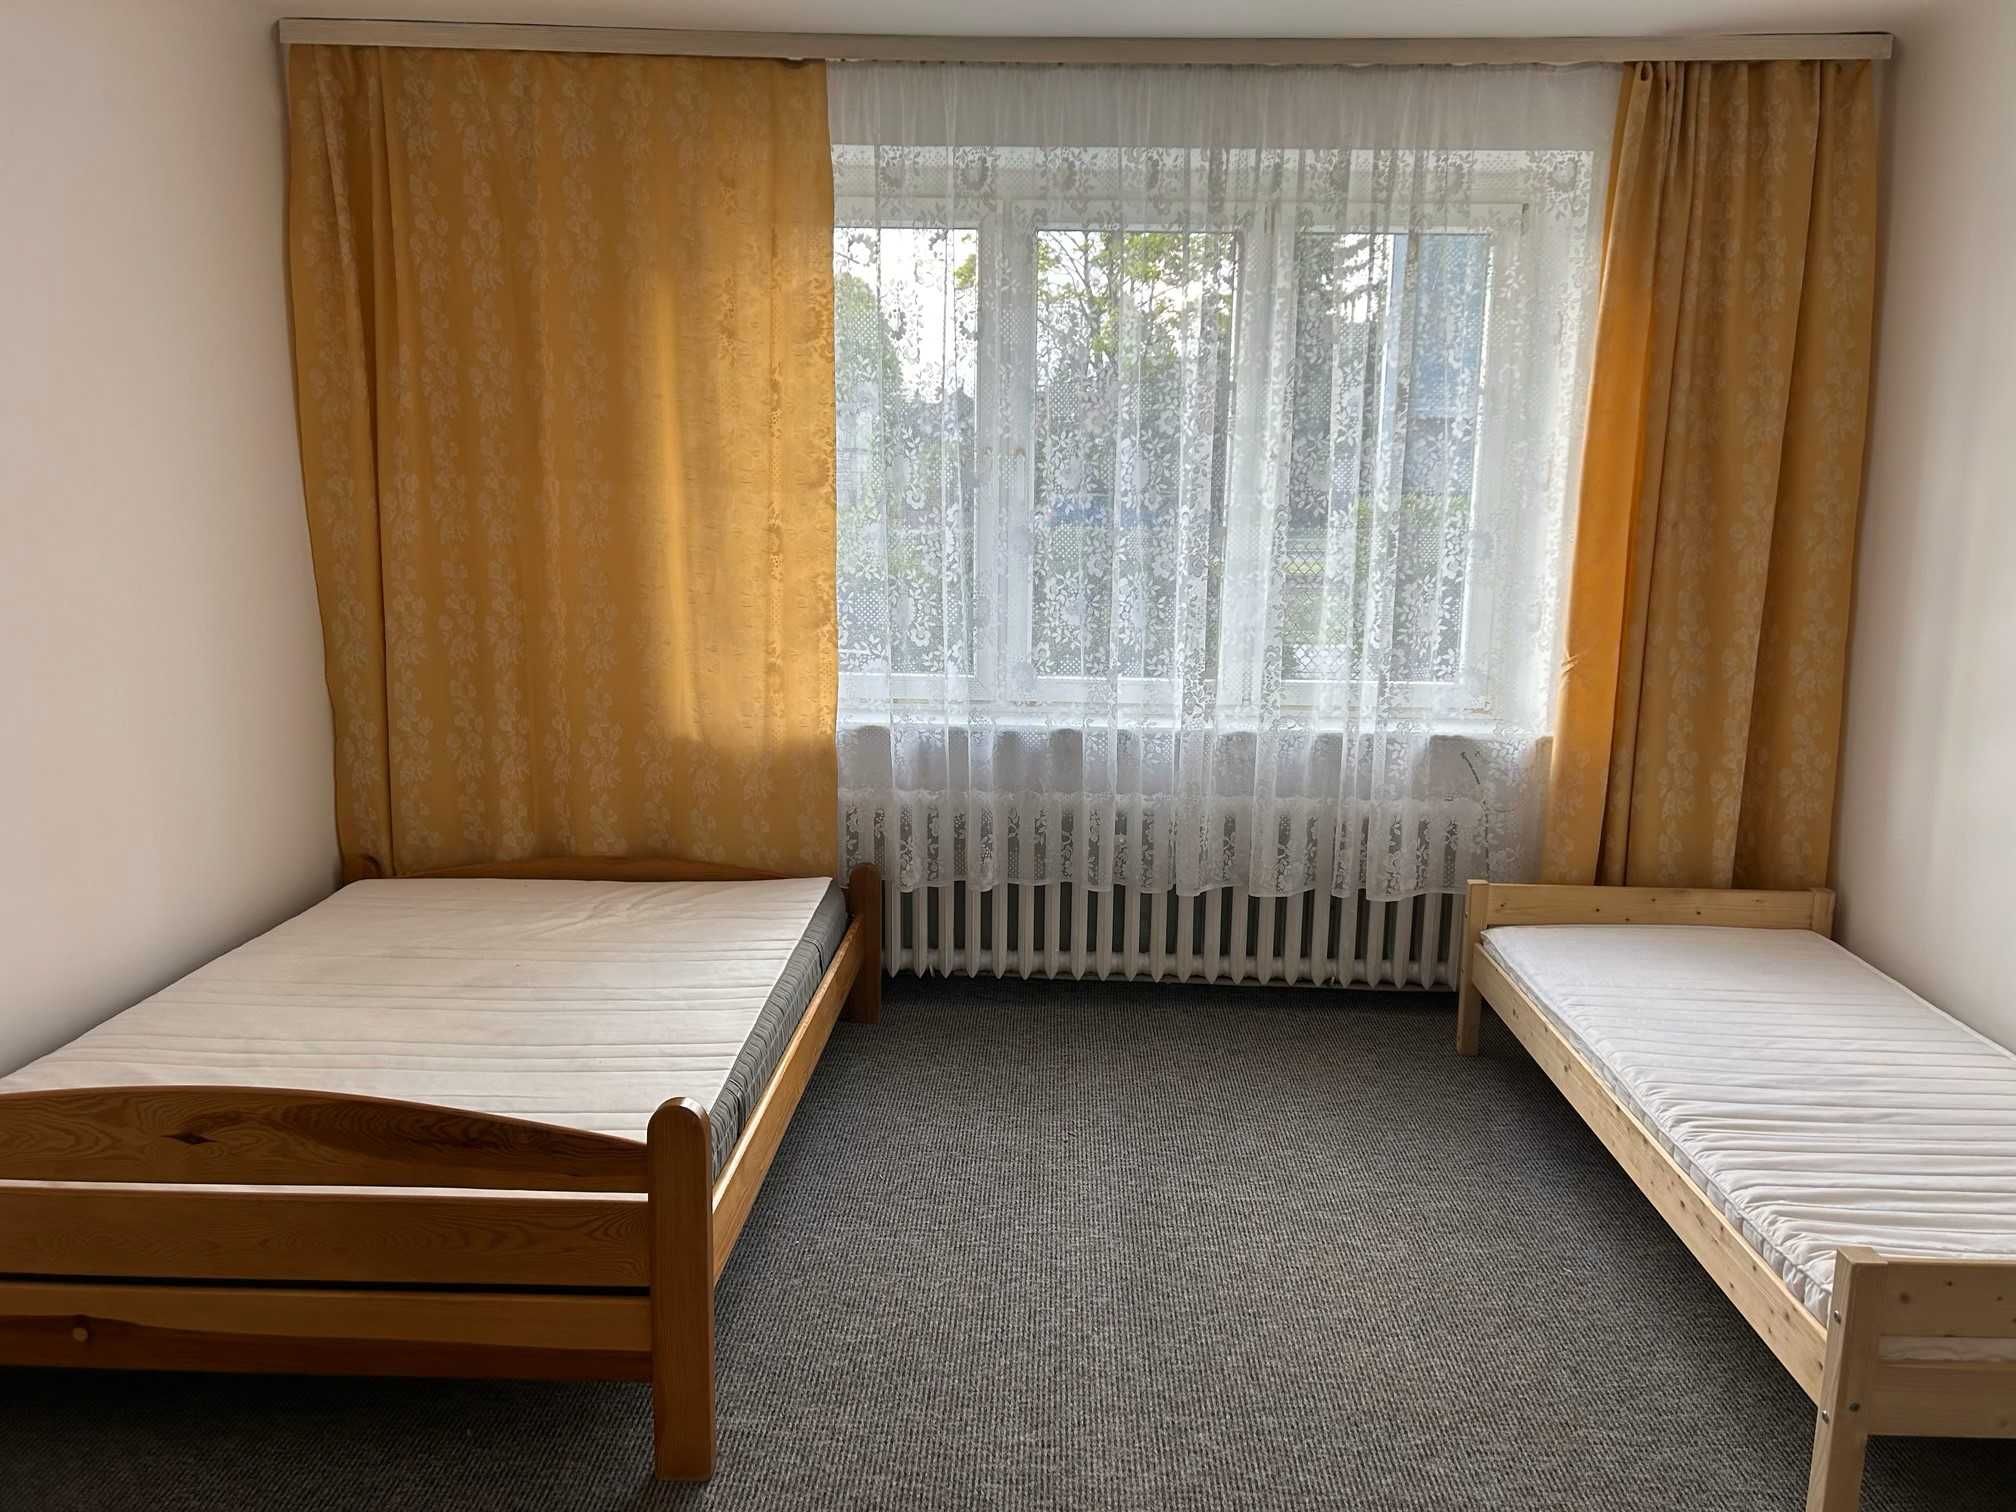 Mieszkanie , 58 m2 na parterze w domku jednorodzinnym, ul. Warszawska